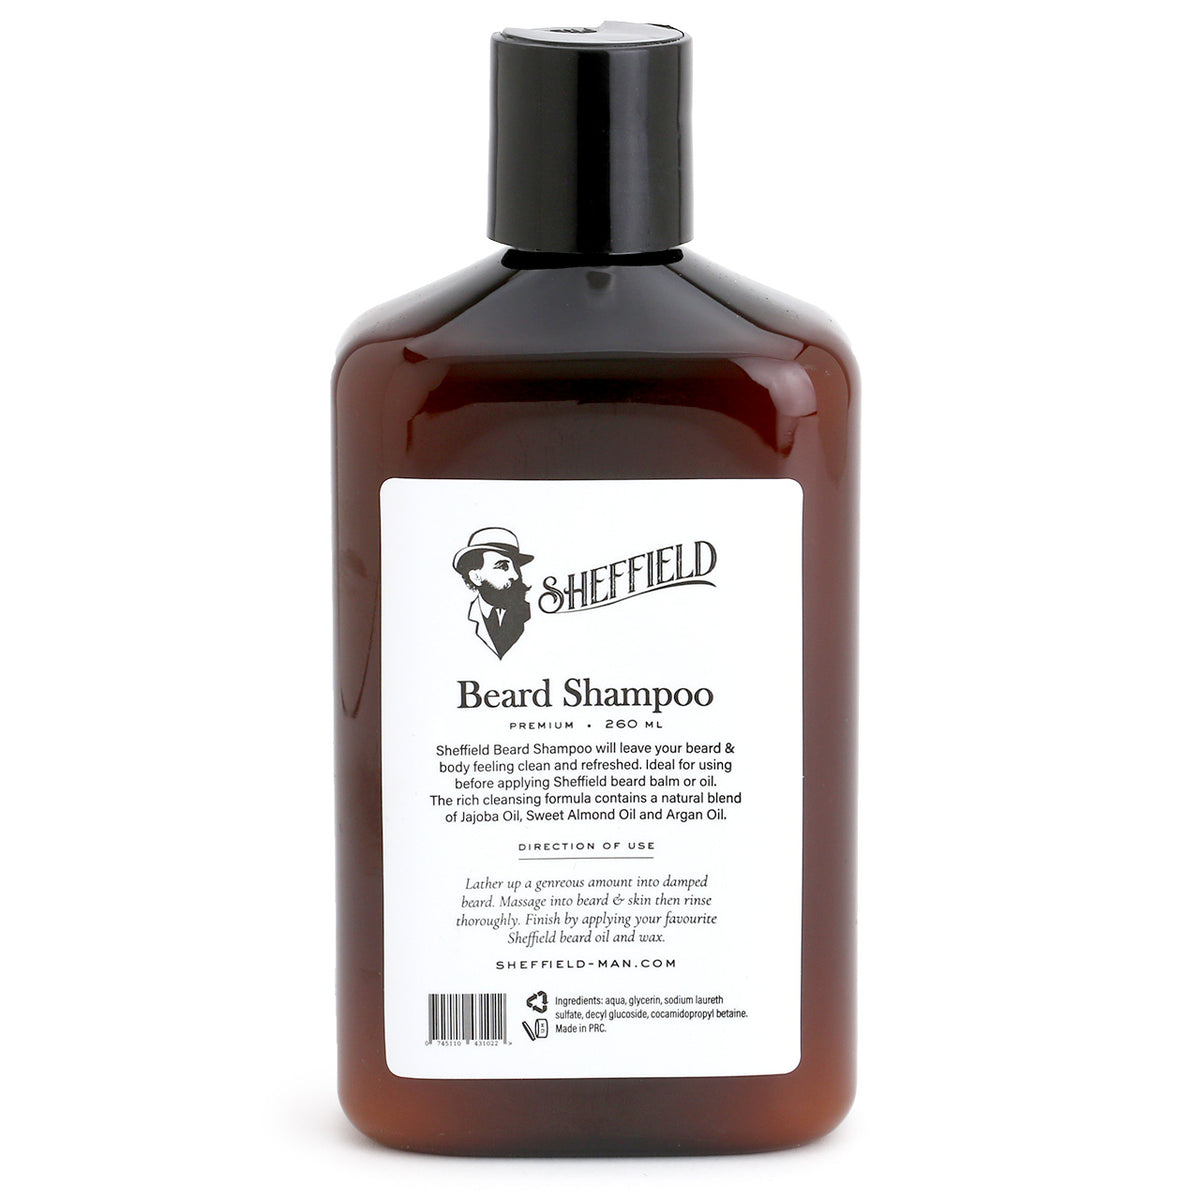 Sheffield Beard Shampoo in a bottle